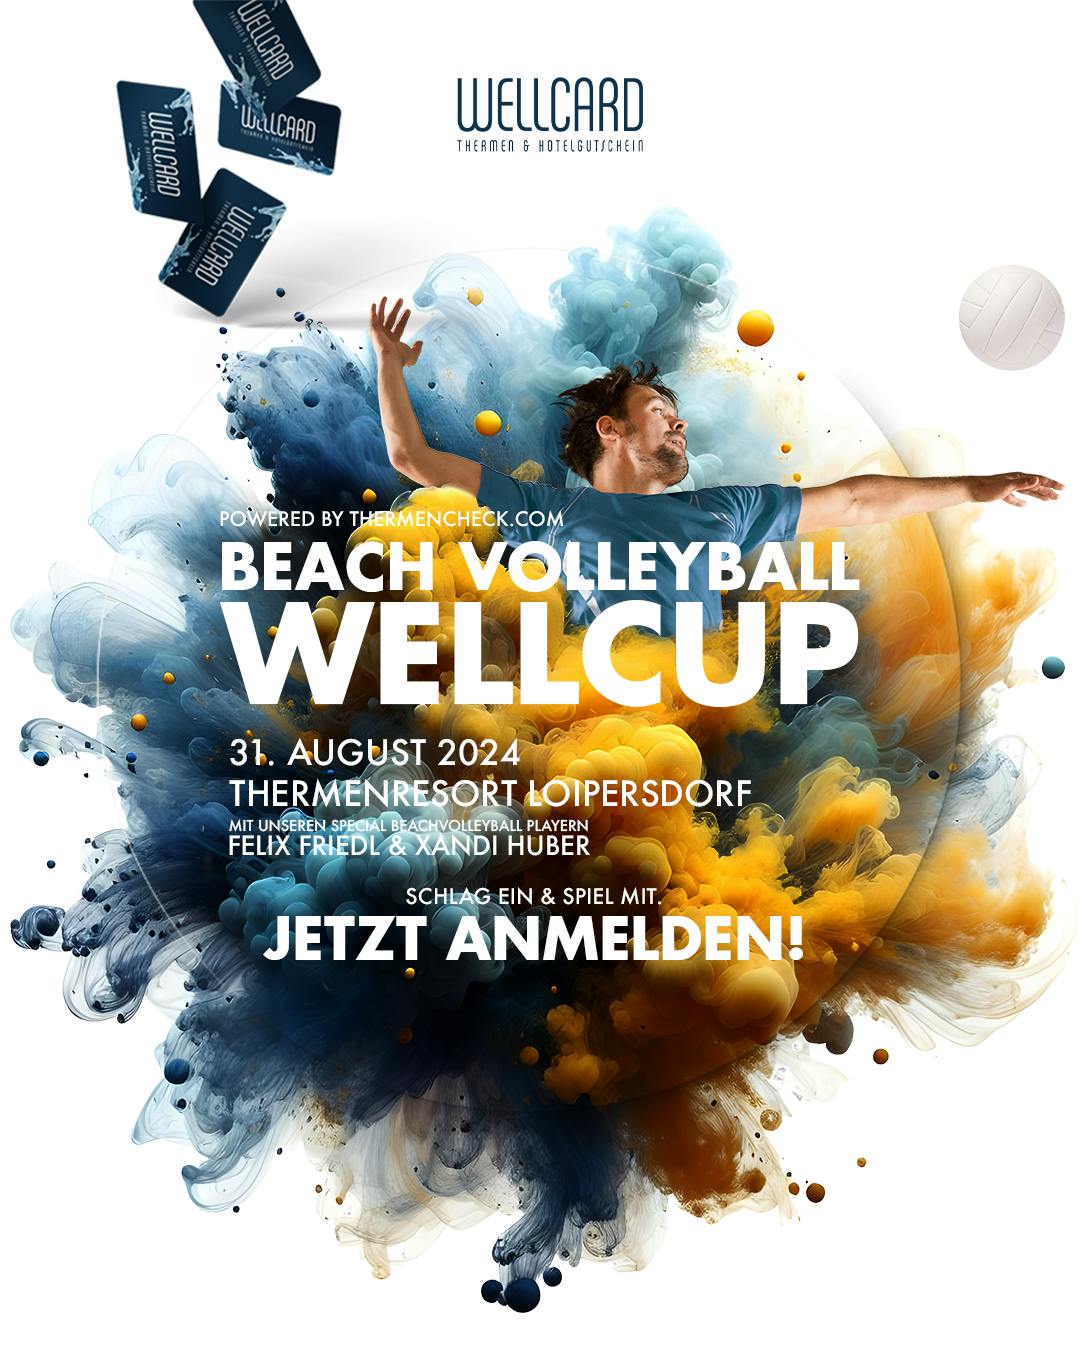 Baggern, pritschen, smashen: Am 31. August 2024 steigt der Beach Volleyball-Wellcup 2.0 im Thermenresort Loipersdorf!